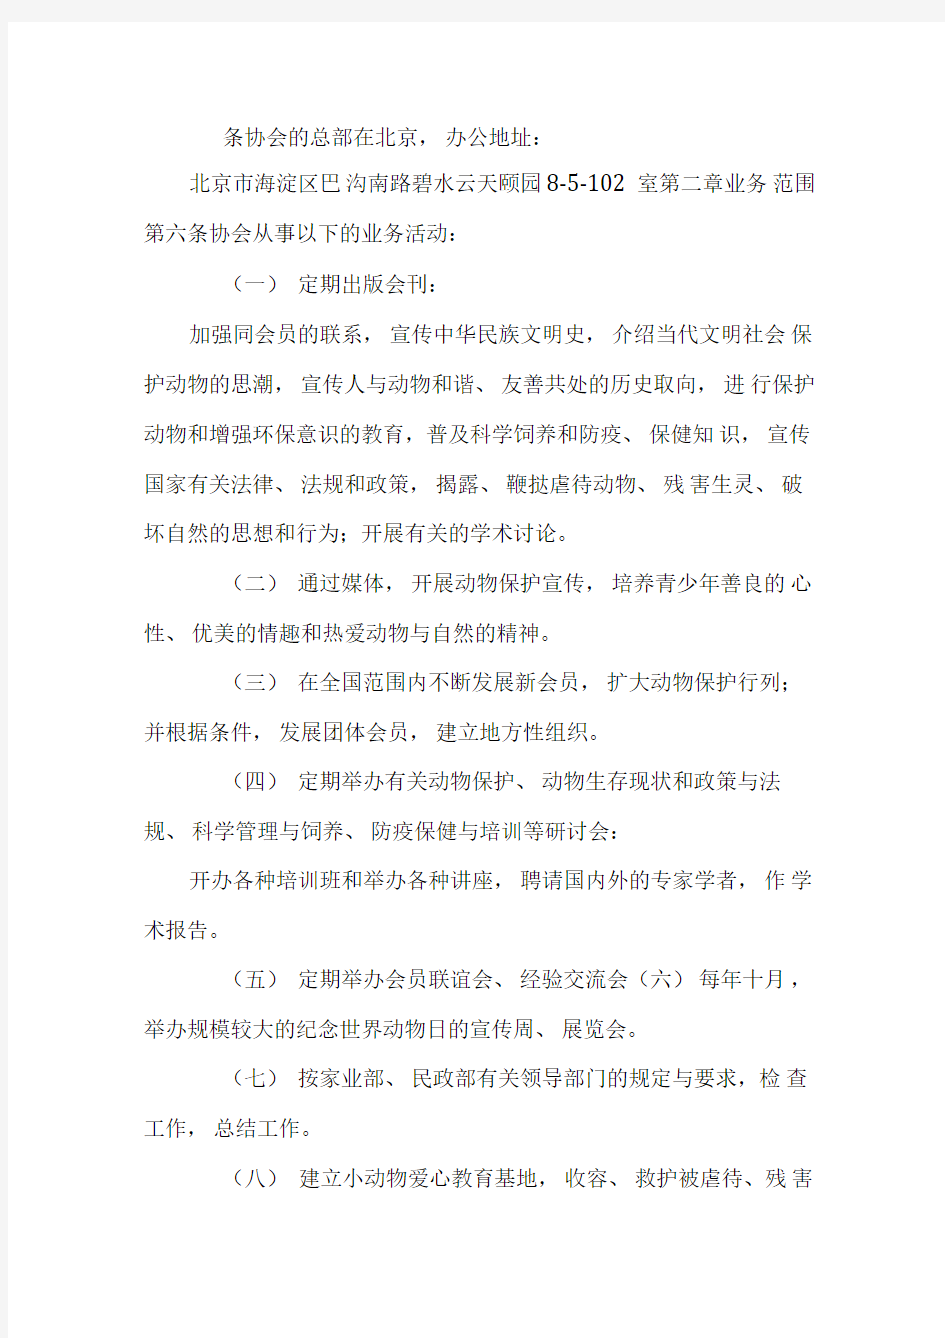 中国小动物保护协会章程(草案)